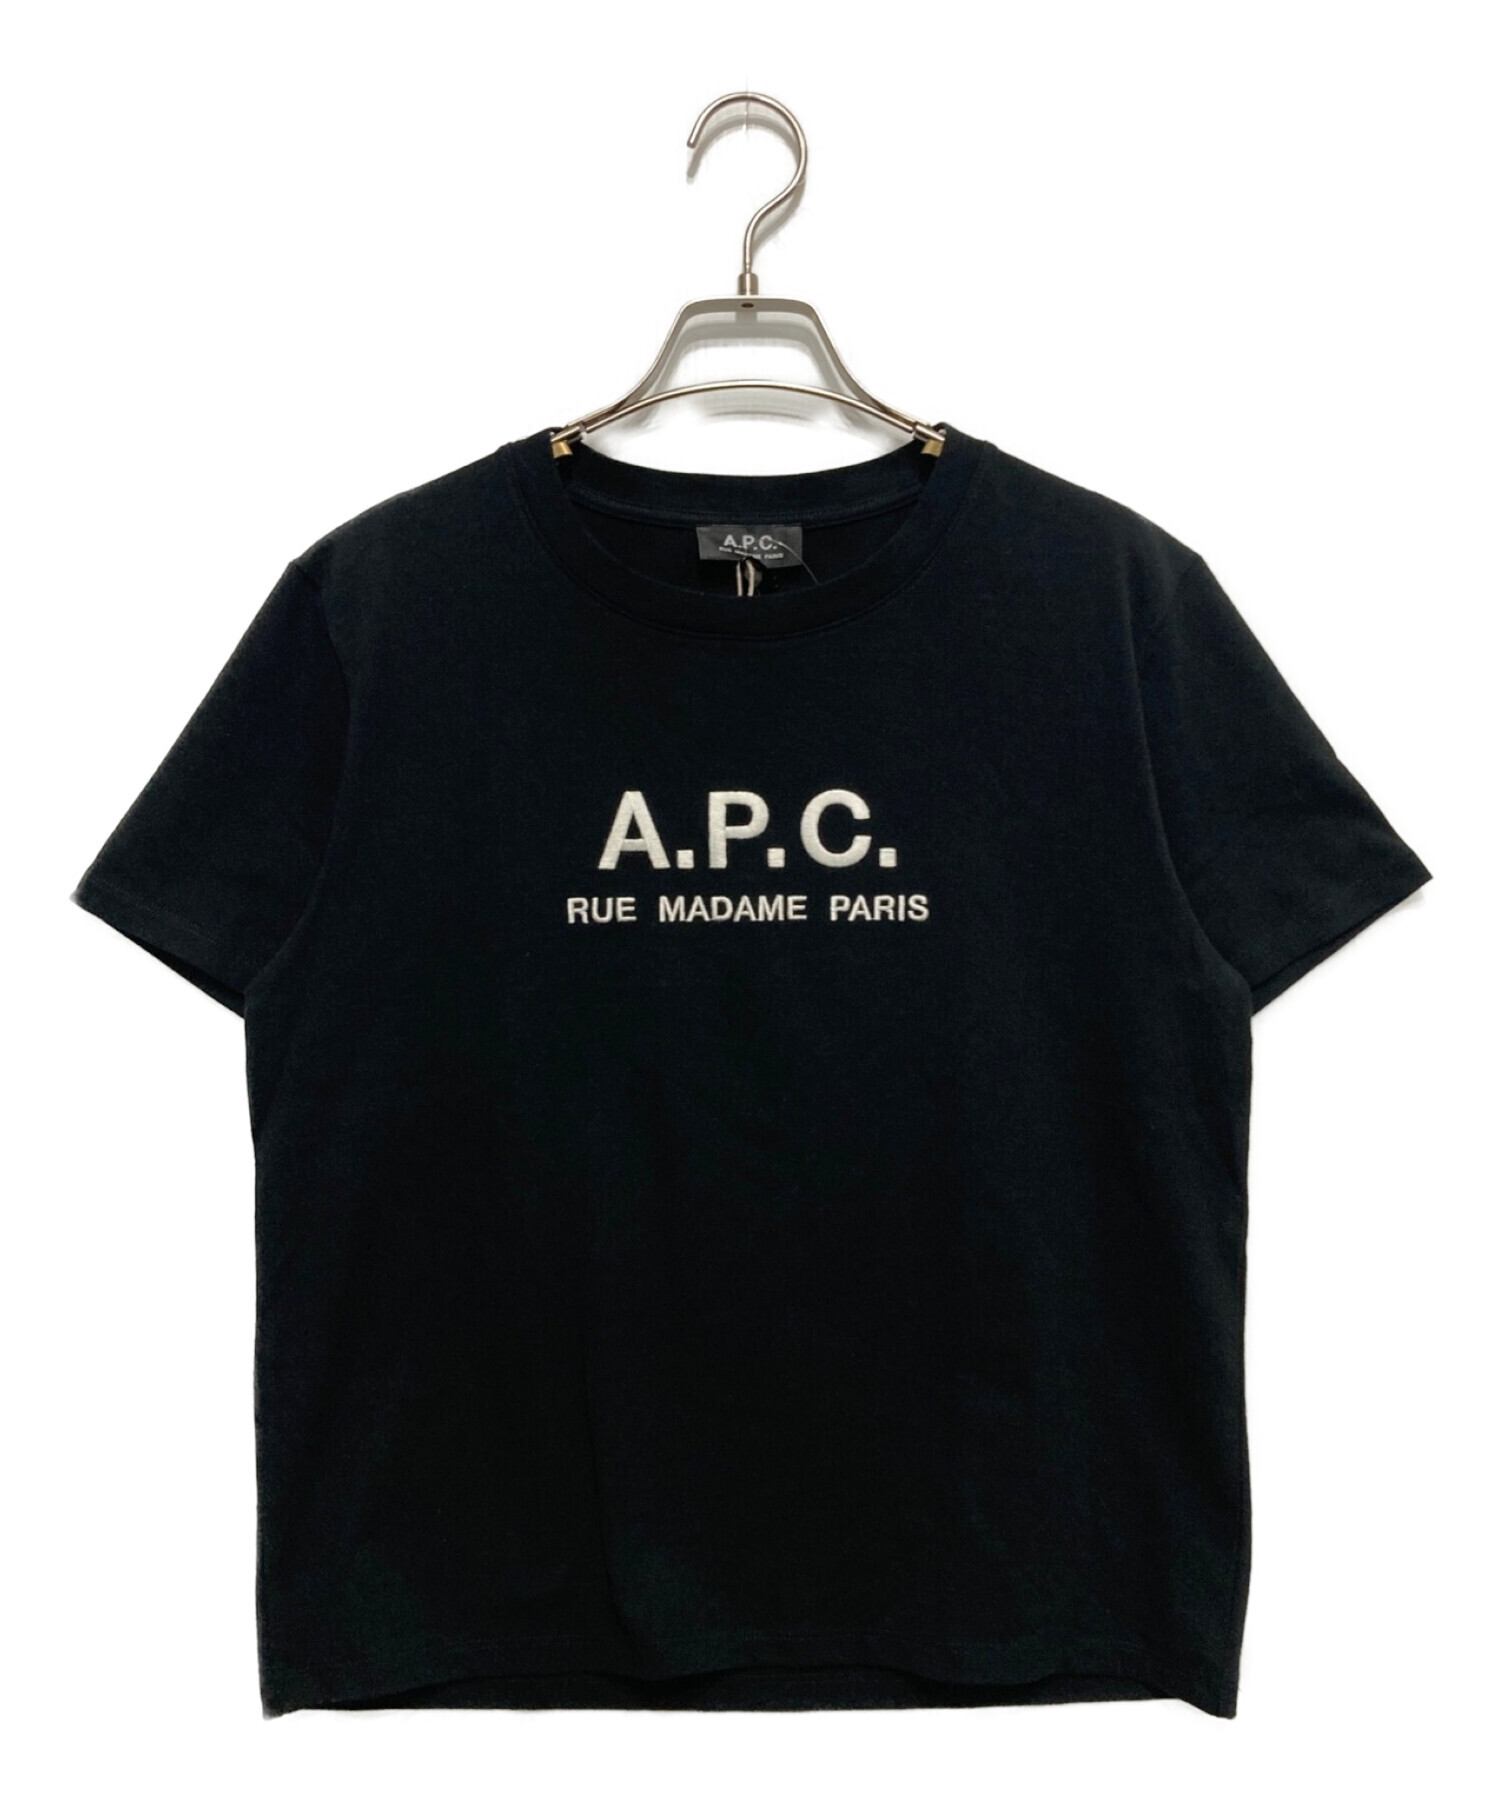 A.P.C. (アー・ペー・セー) FREAK'S STORE (フリークスストア) Tシャツ ブラック サイズ:S